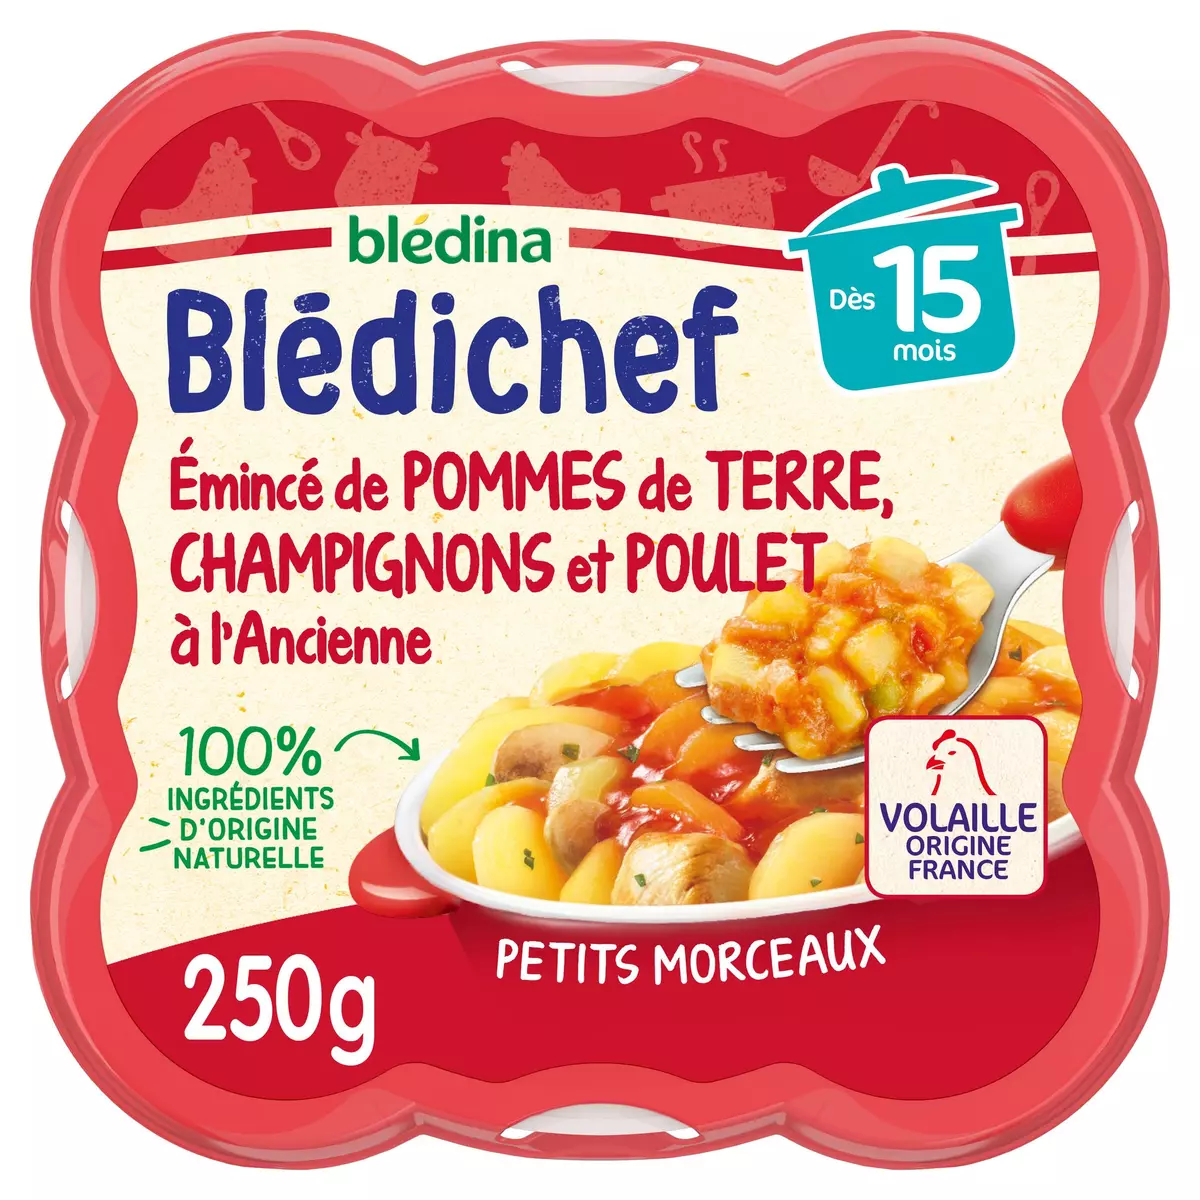 BLEDINA Blédichef assiette pommes de terre champignon poulet dès 15 mois 250g